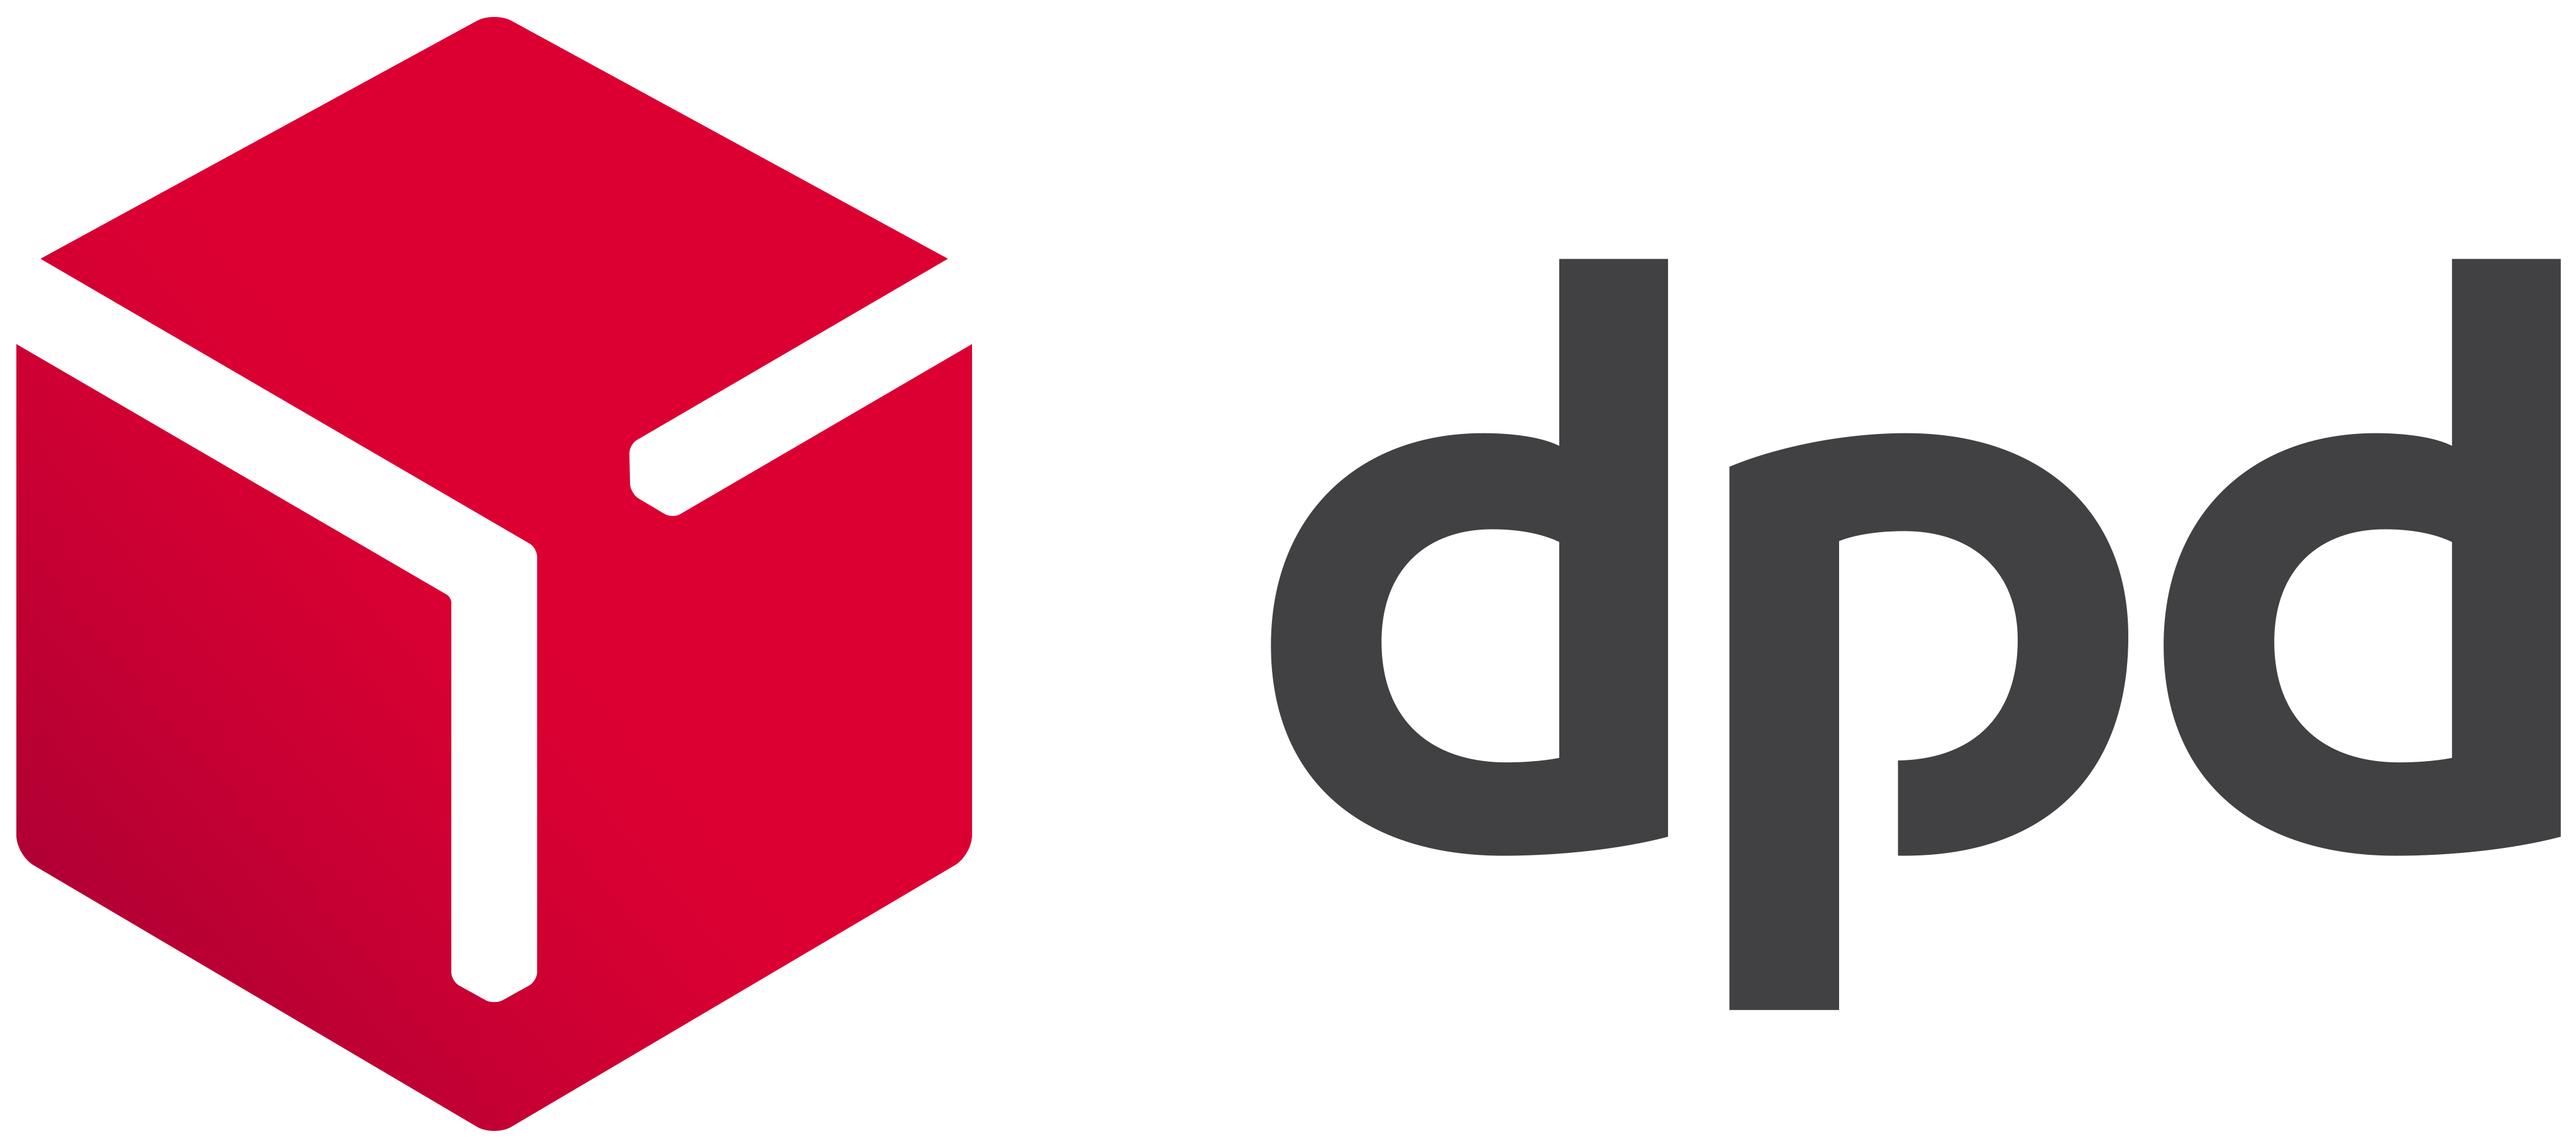 dpd_logo_redgrad.webp